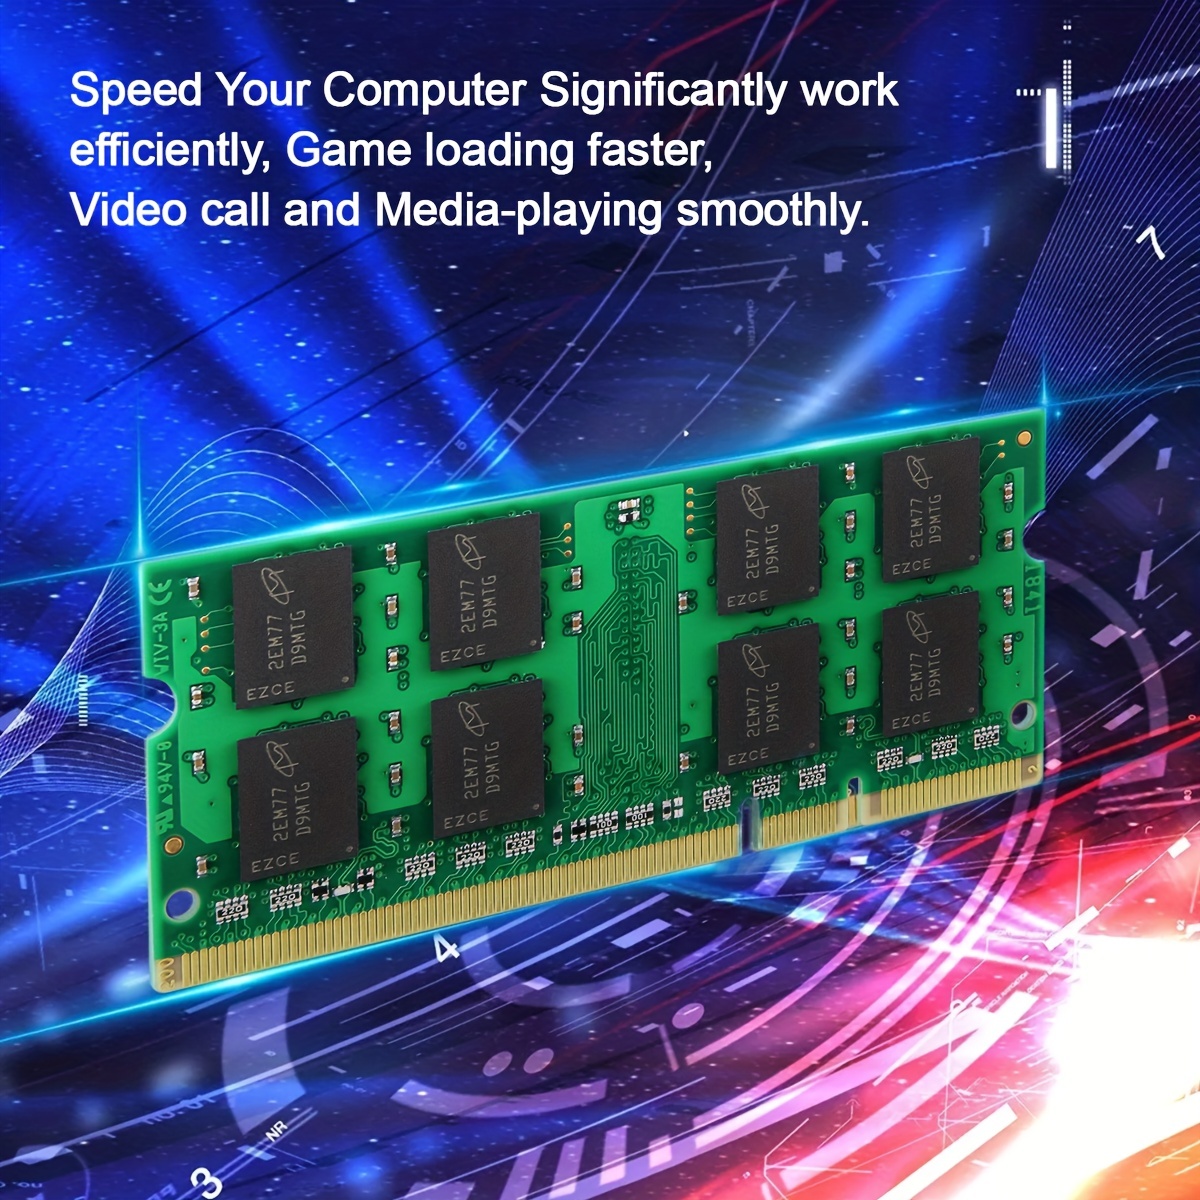 Crucial CL5 Mémoire RAM DDR2 8 Go (2 x 4 Go) PC2-5300 667 MHz